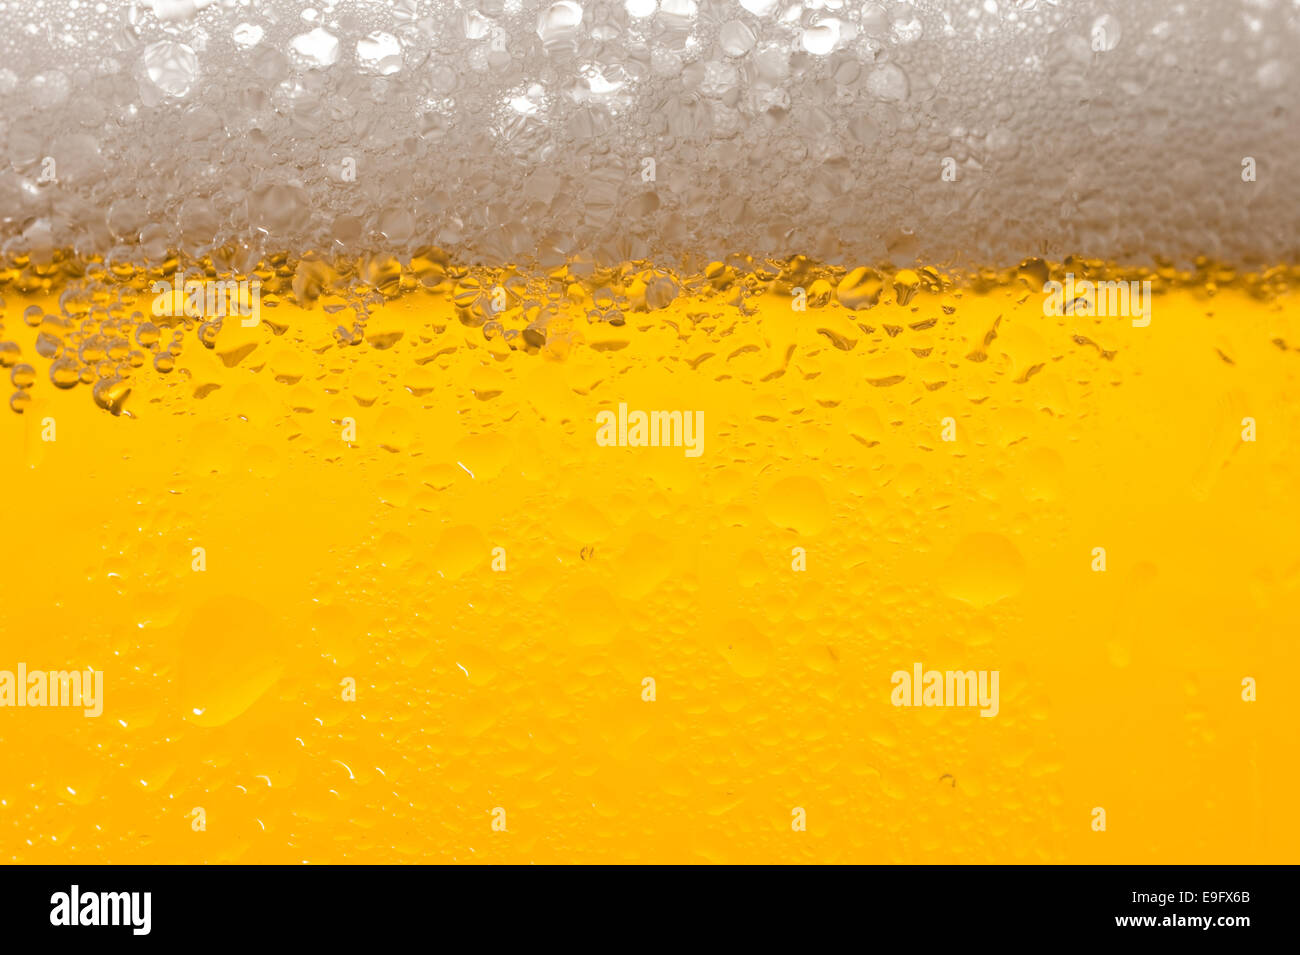 Beer Stock Photo